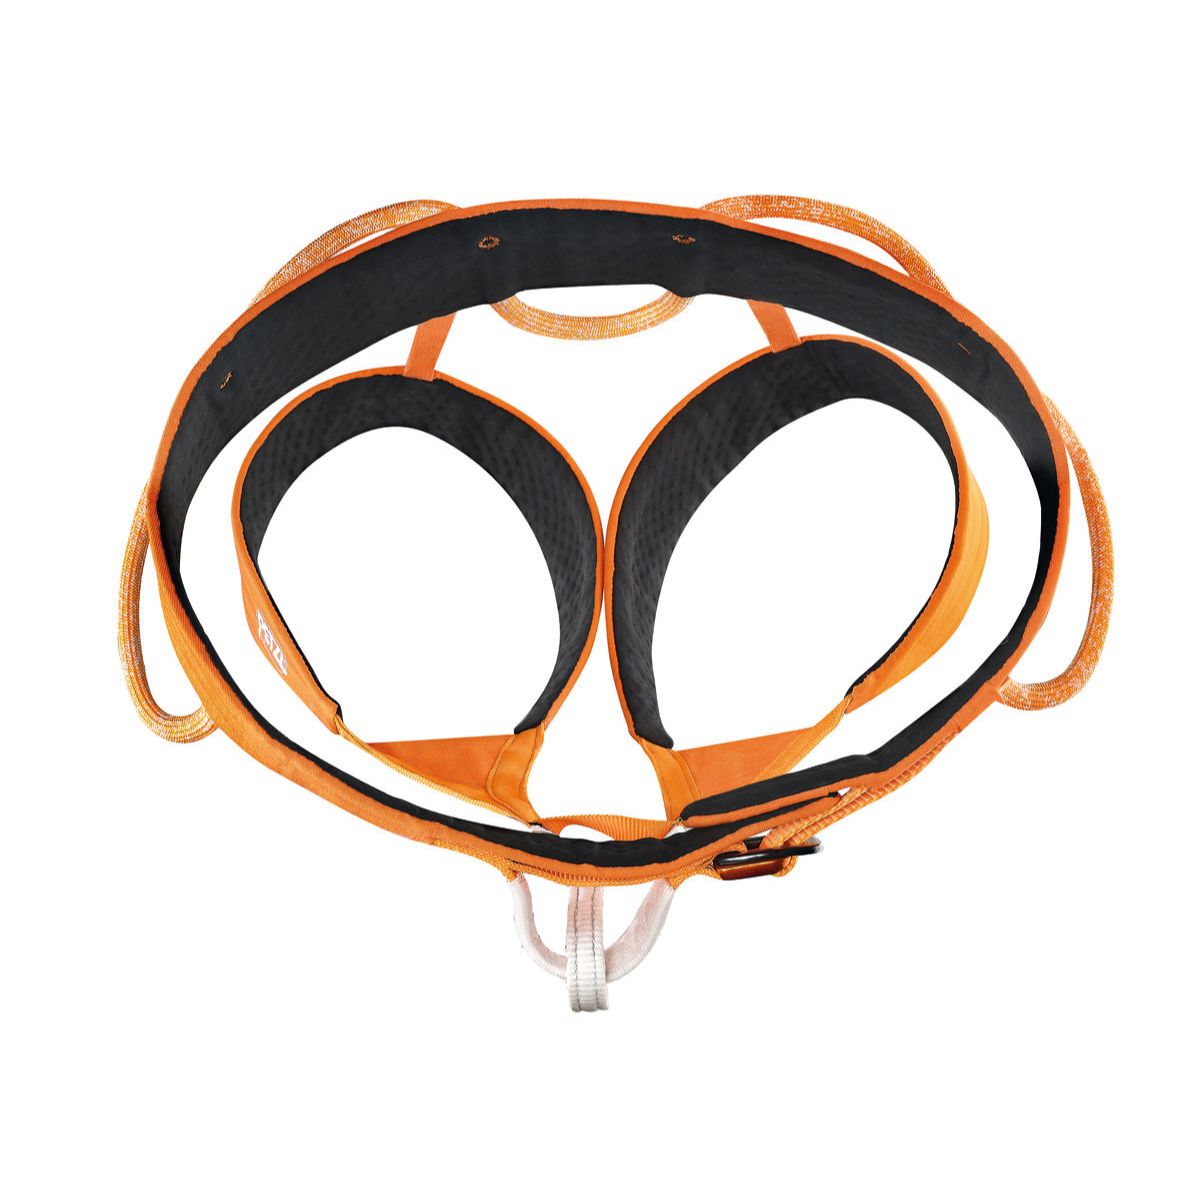 Hirundos Harness - Orange - Large 4